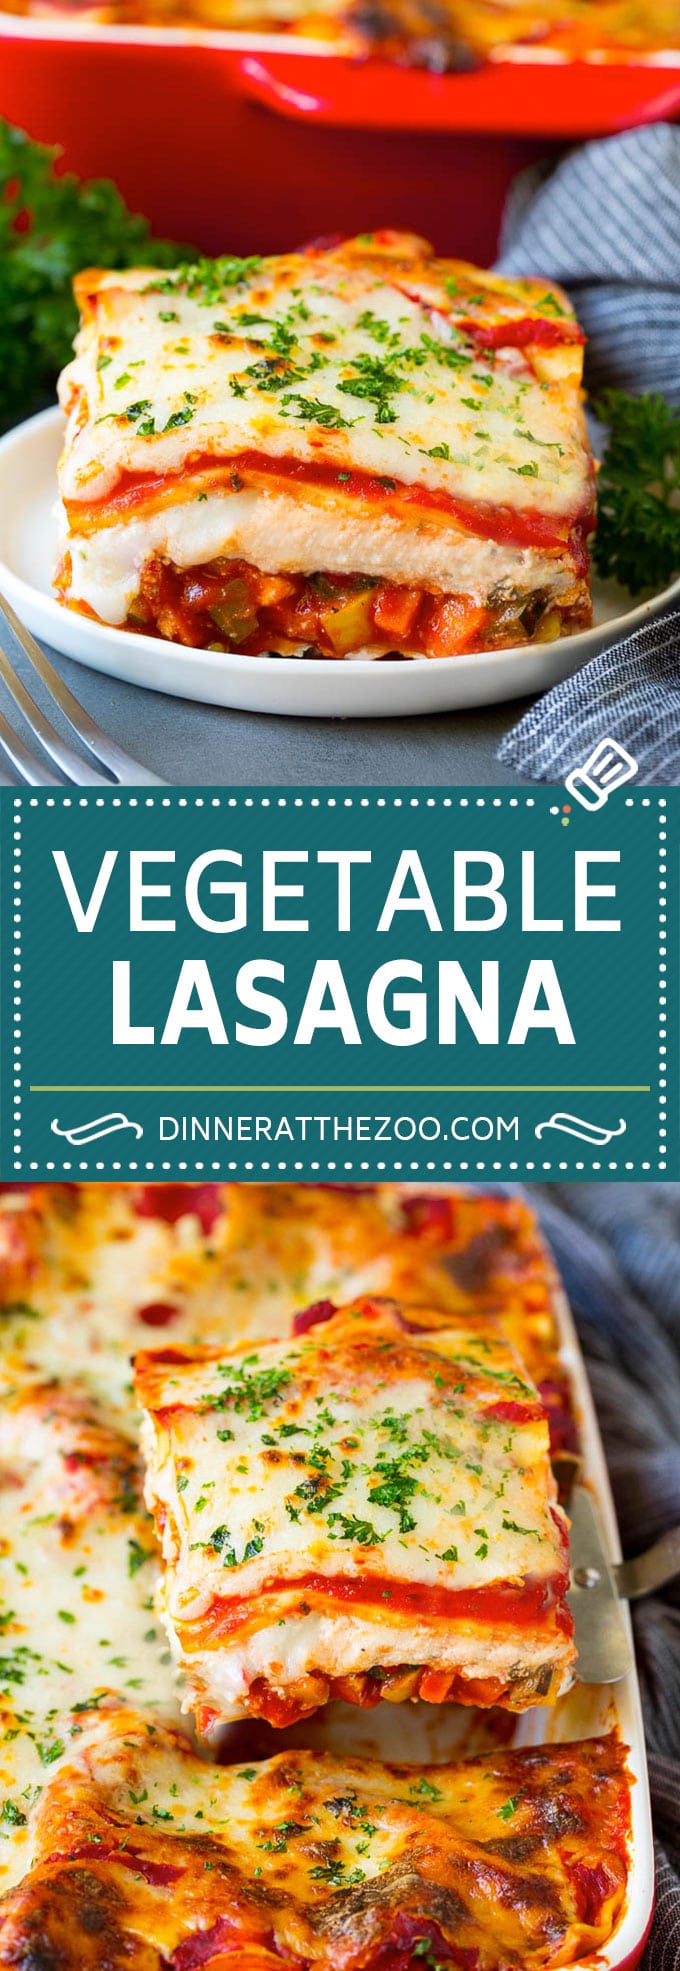 Vegetable Lasagna Recipe | Vegetarian Lasagna #lasagna #vegetarian #veggies #cheese #pasta #dinner #dinneratthezoo